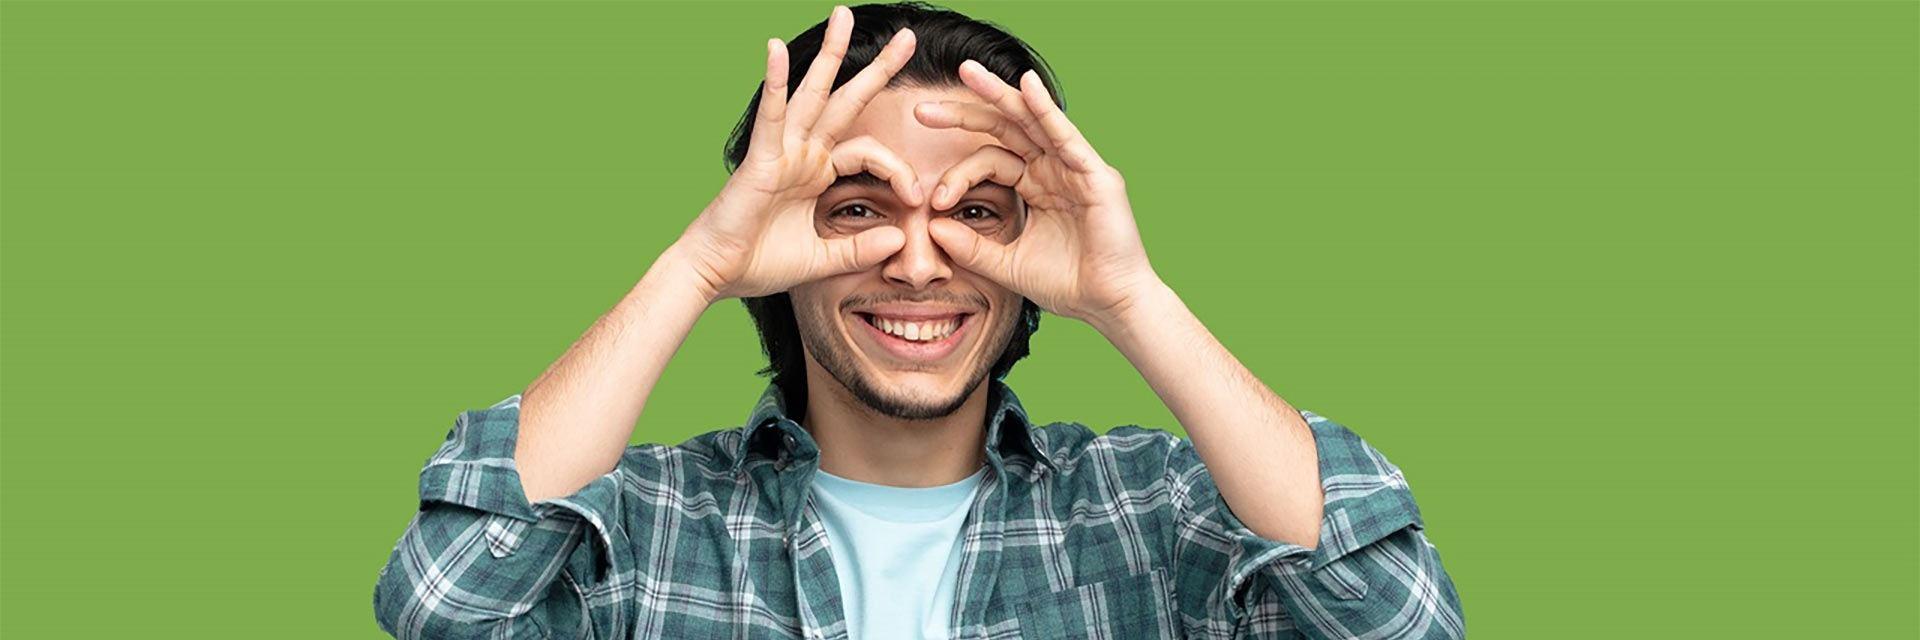 Bild zeigt einen jungen Mann der eine Brille mit seinen Findern formt